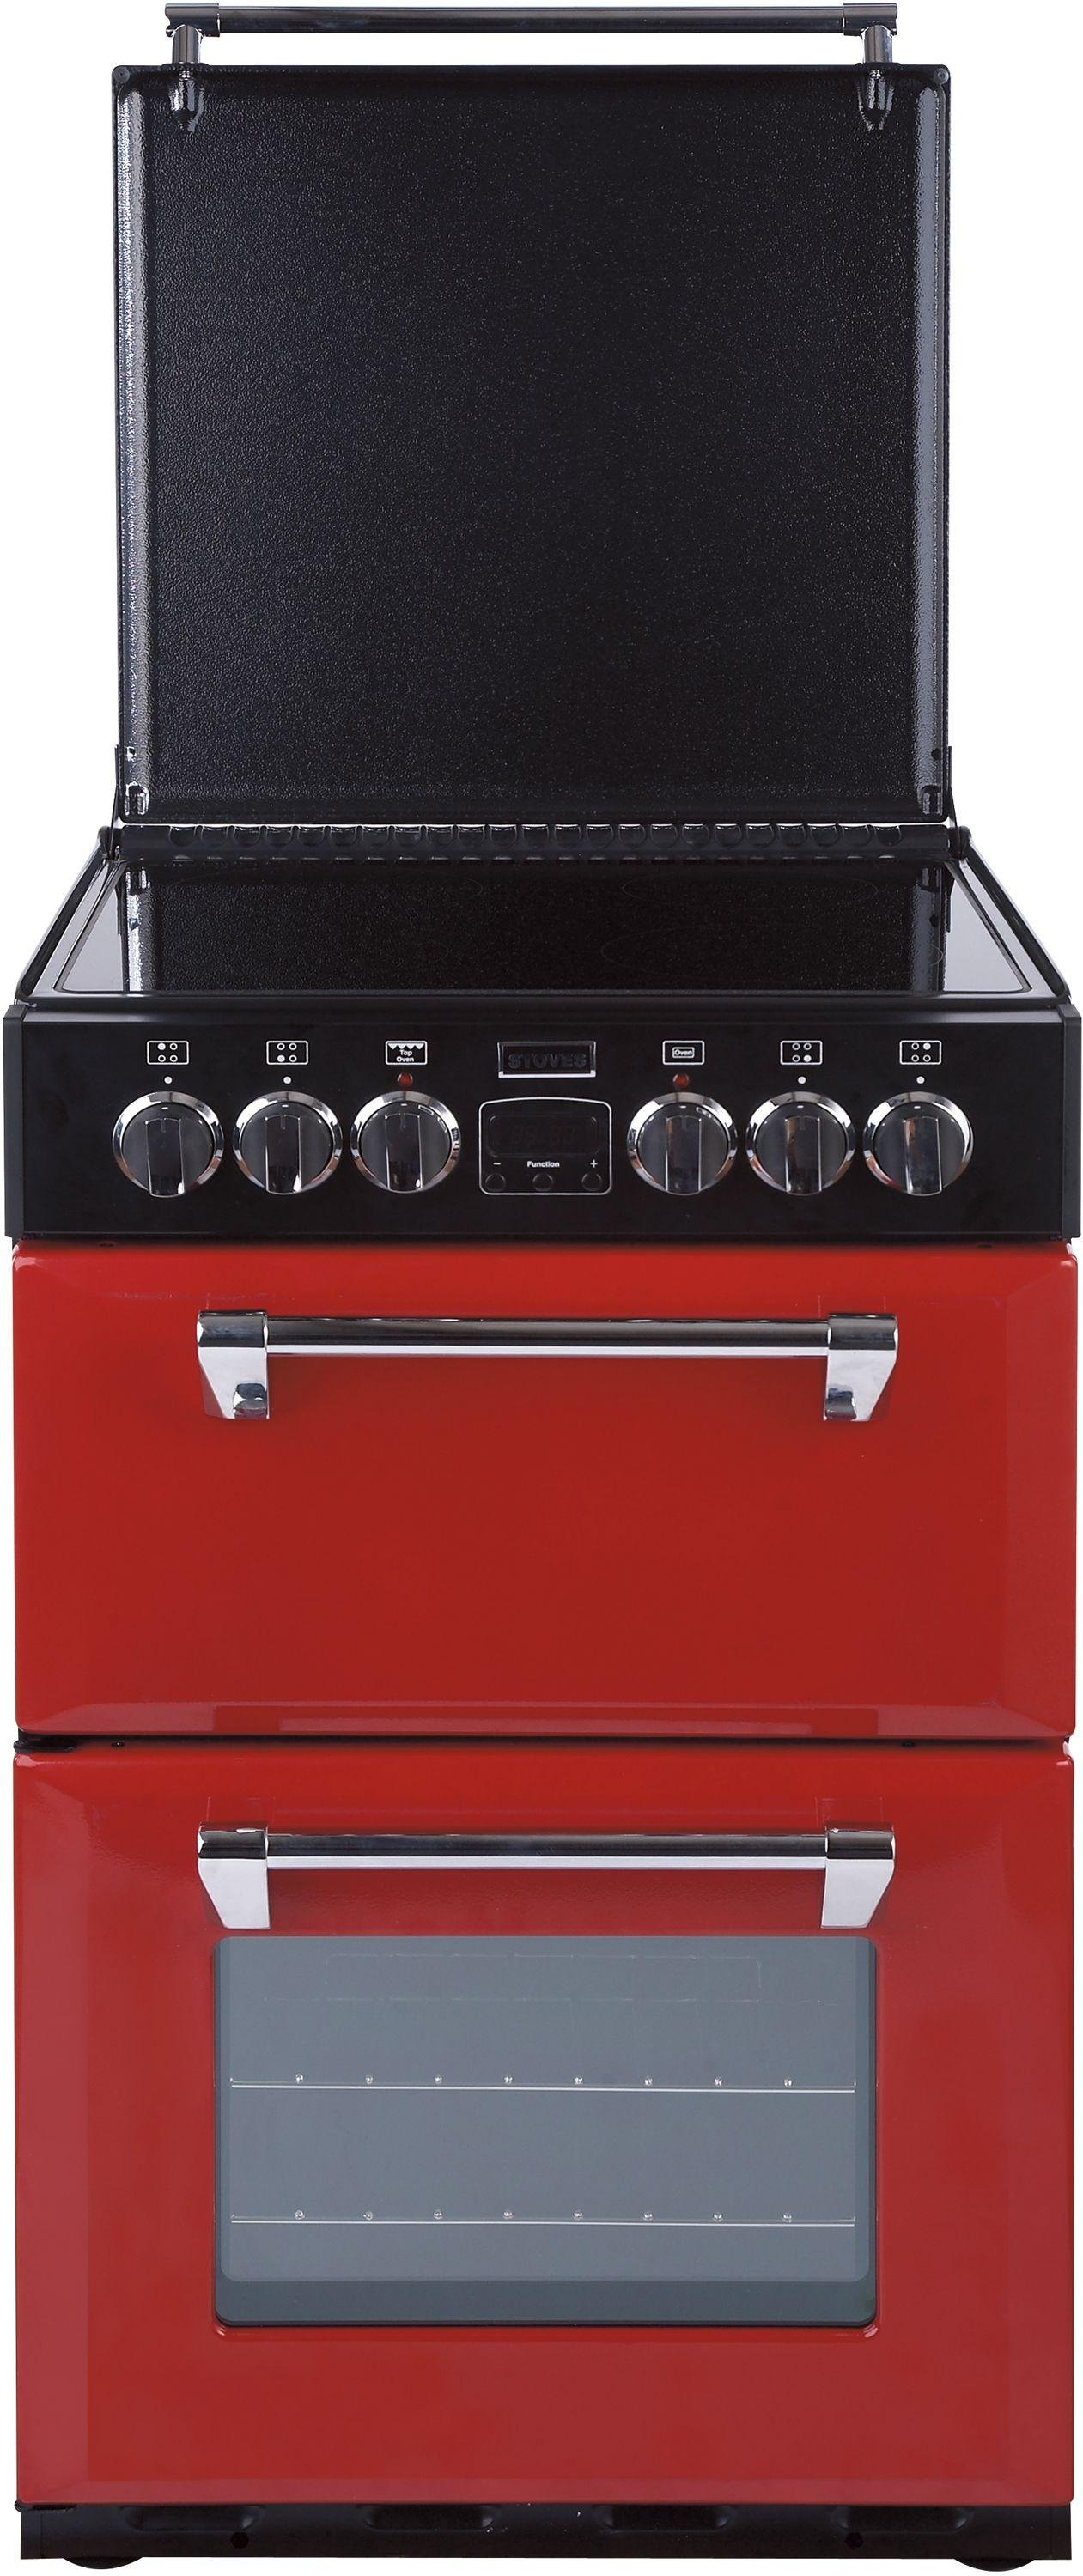 Stoves Richmond 550E 55cm MiniRange Electric Cooker - Red (1164866 ...